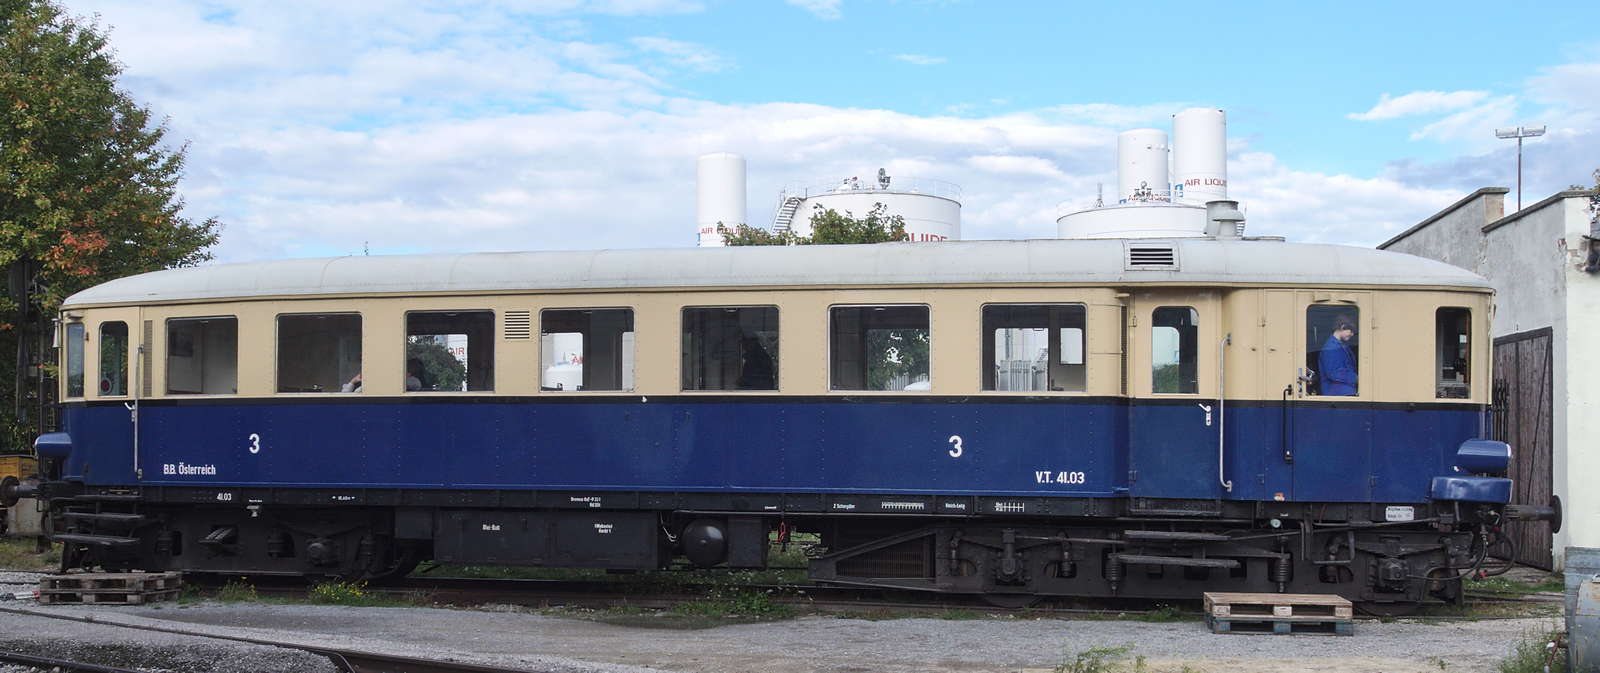 5041.03 in the Schwechat Railway Museum